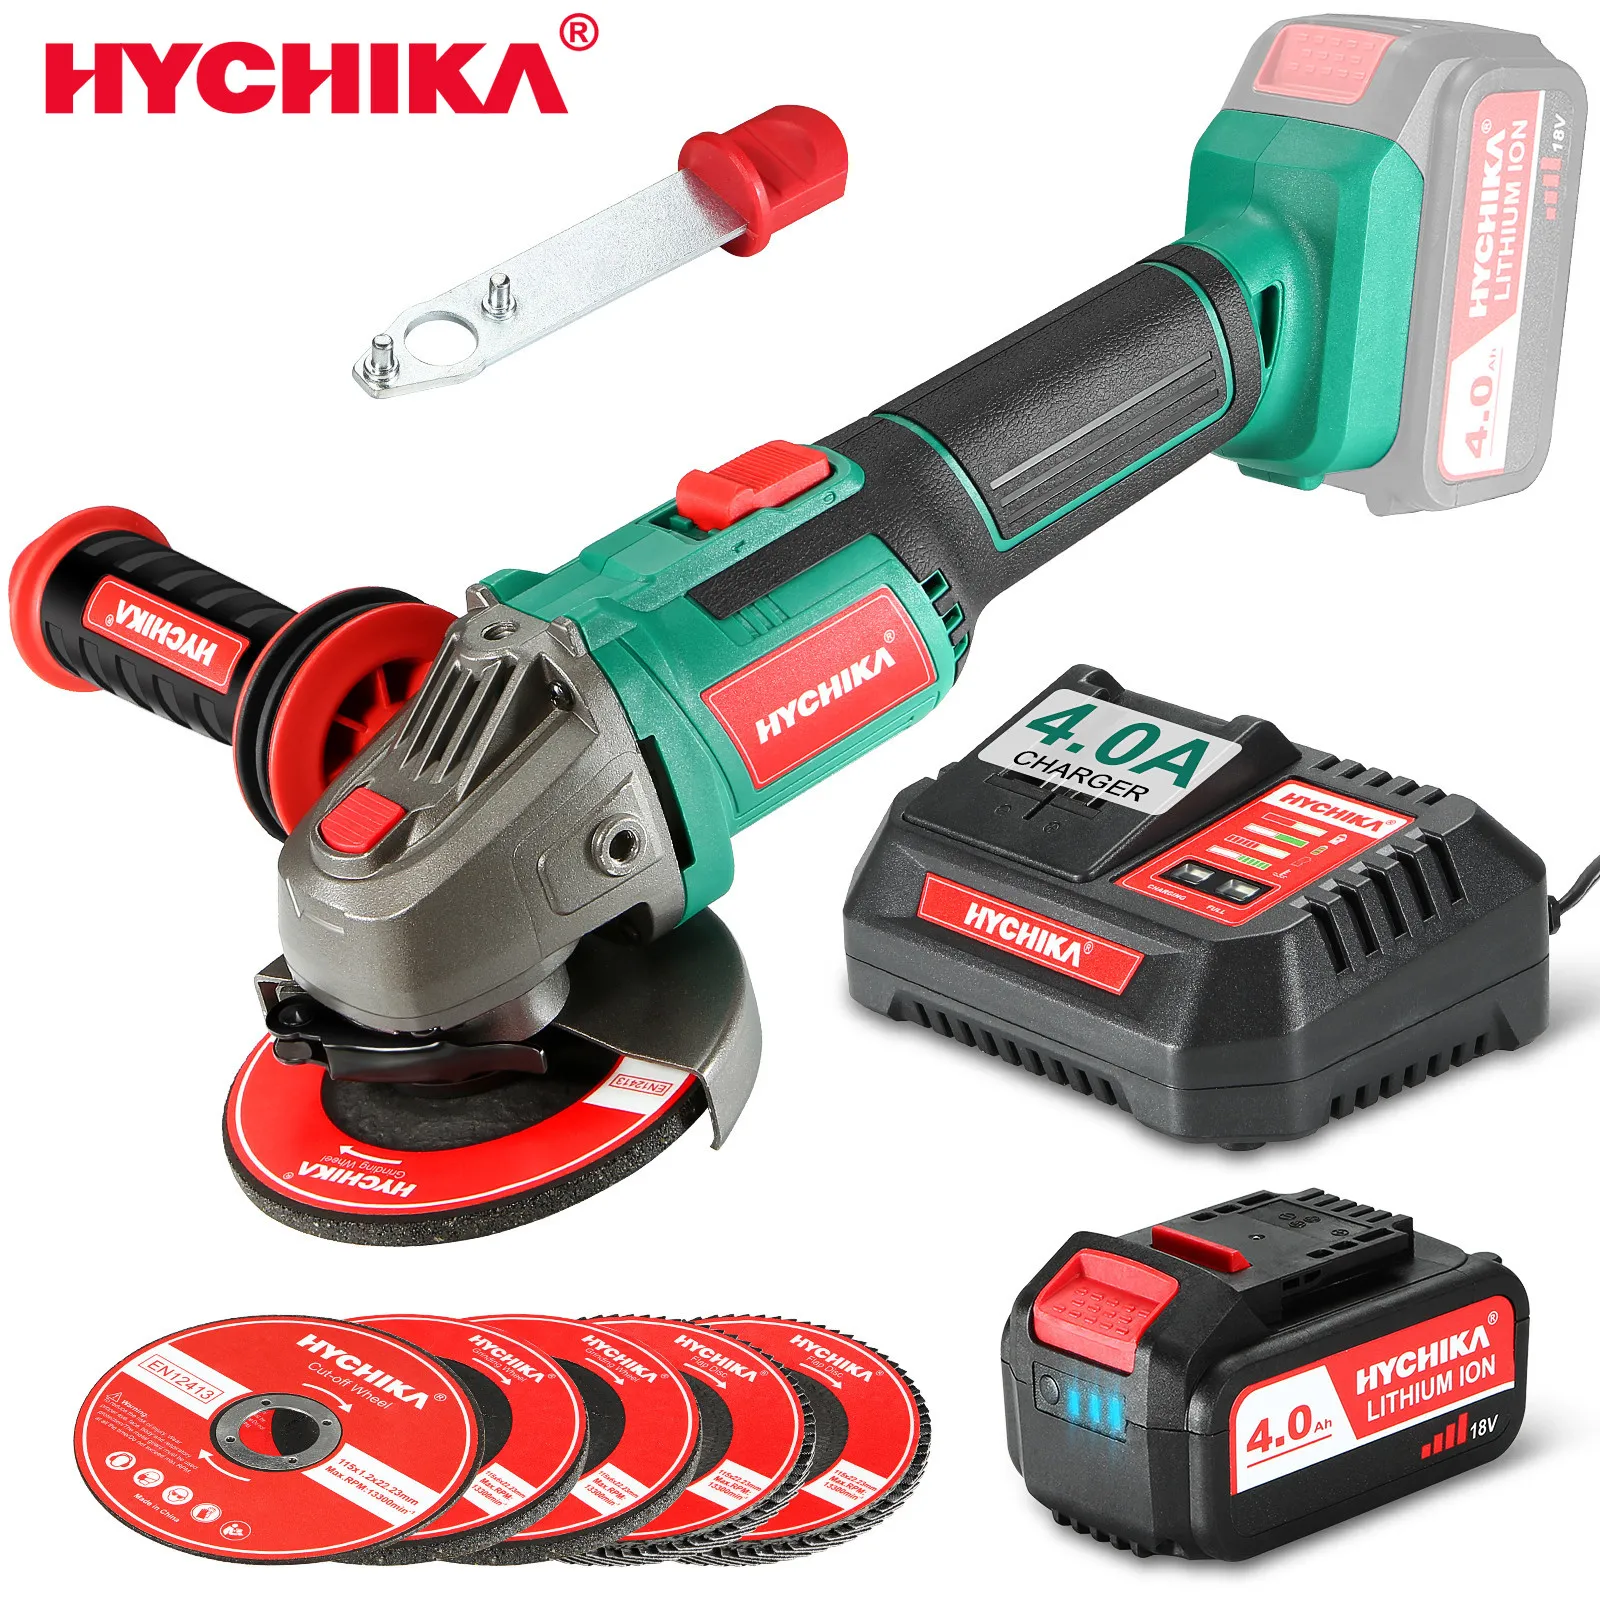 Hychika Grinder Battery | Hychika 18v 4 Battery | Manual Grinder | Angle  Grinder - 20v - Aliexpress